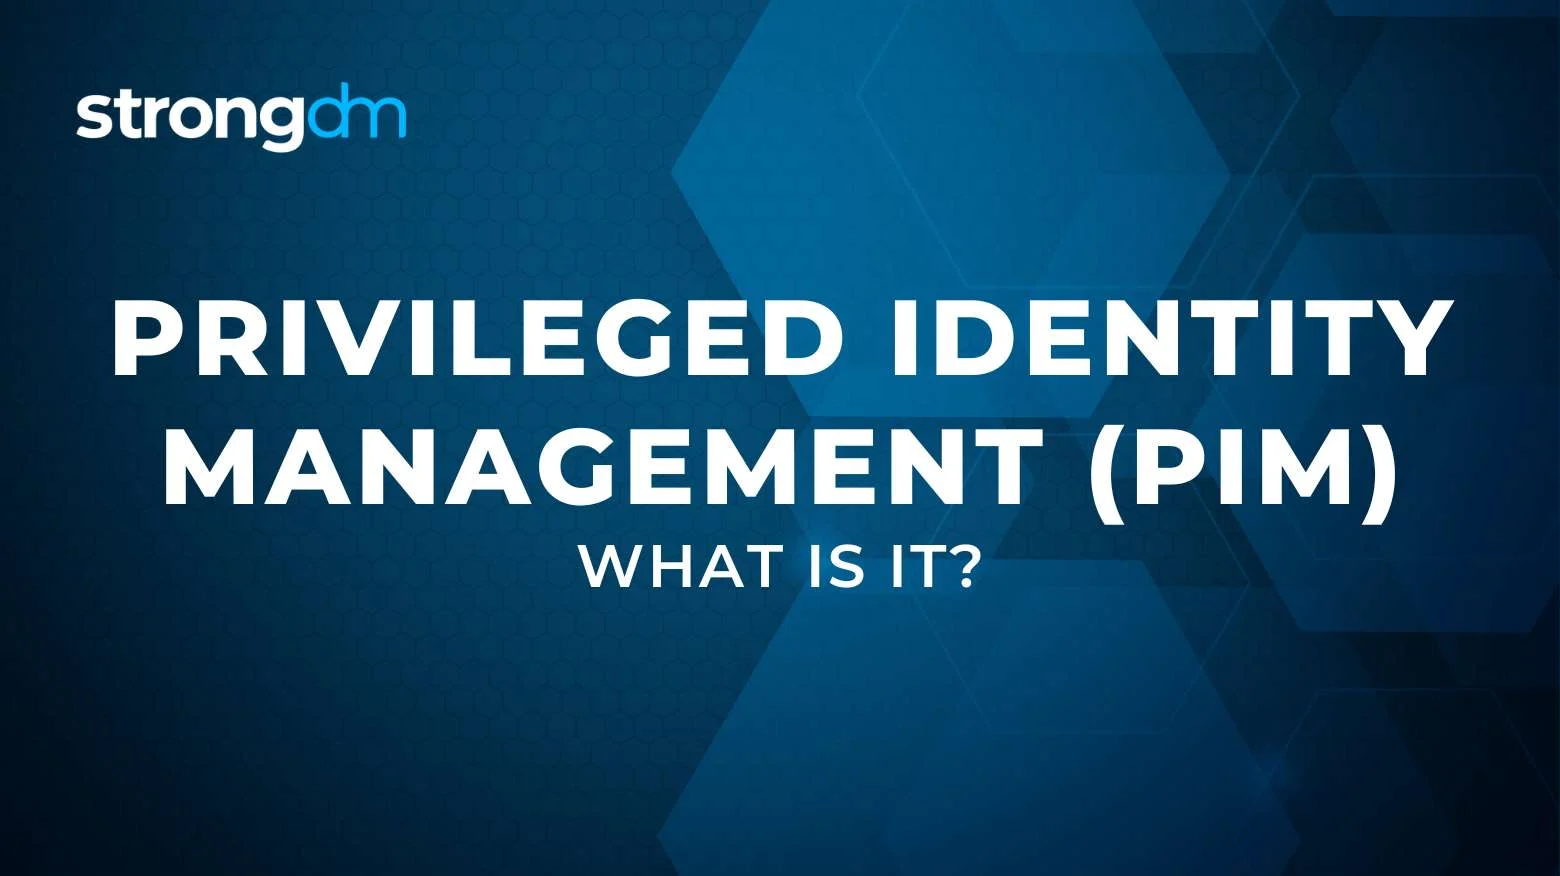 What is Privileged Identity Management (PIM)?